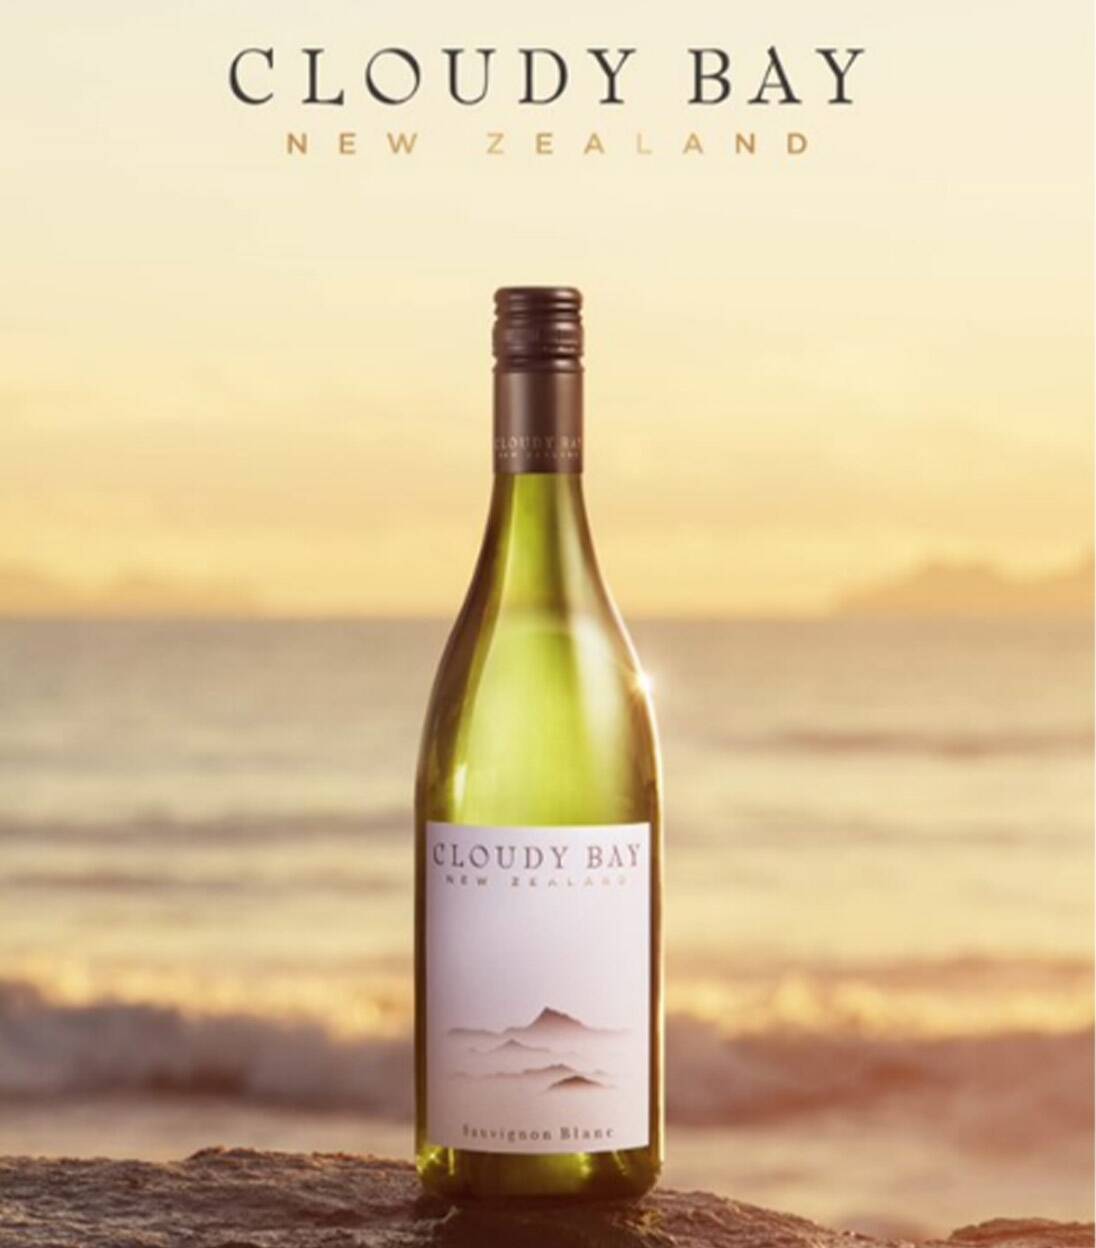 Cloudy Bay Sauvignon Blanc 2014